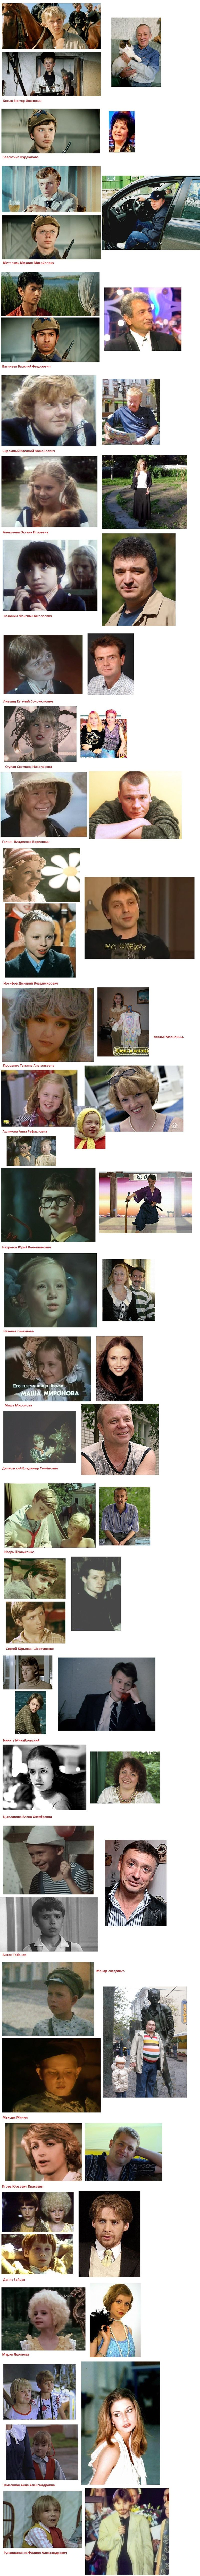 Дети-актеры выросли (2 фото)